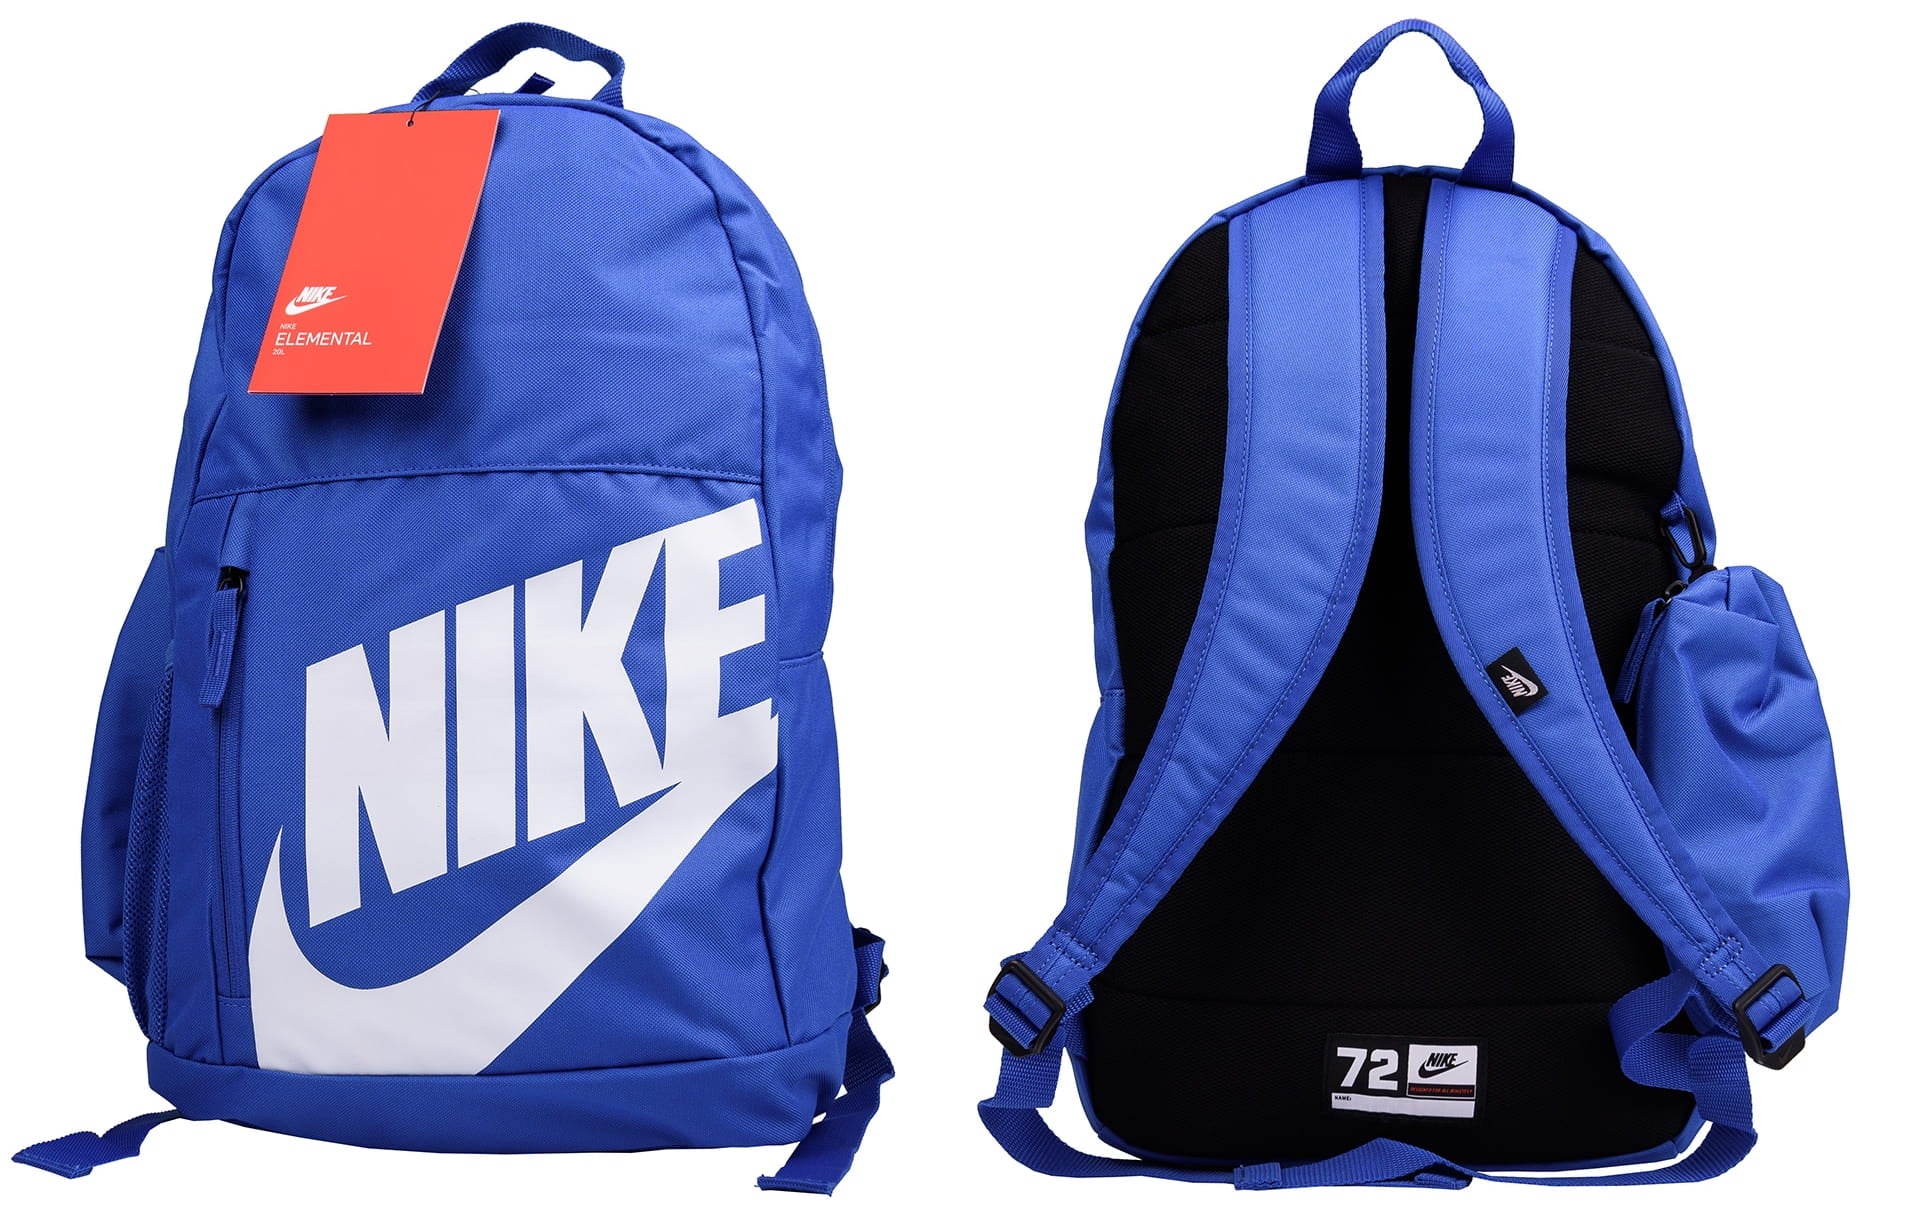 Mochila Nike Elemental escolar con BA6030 480 - azul – depor8